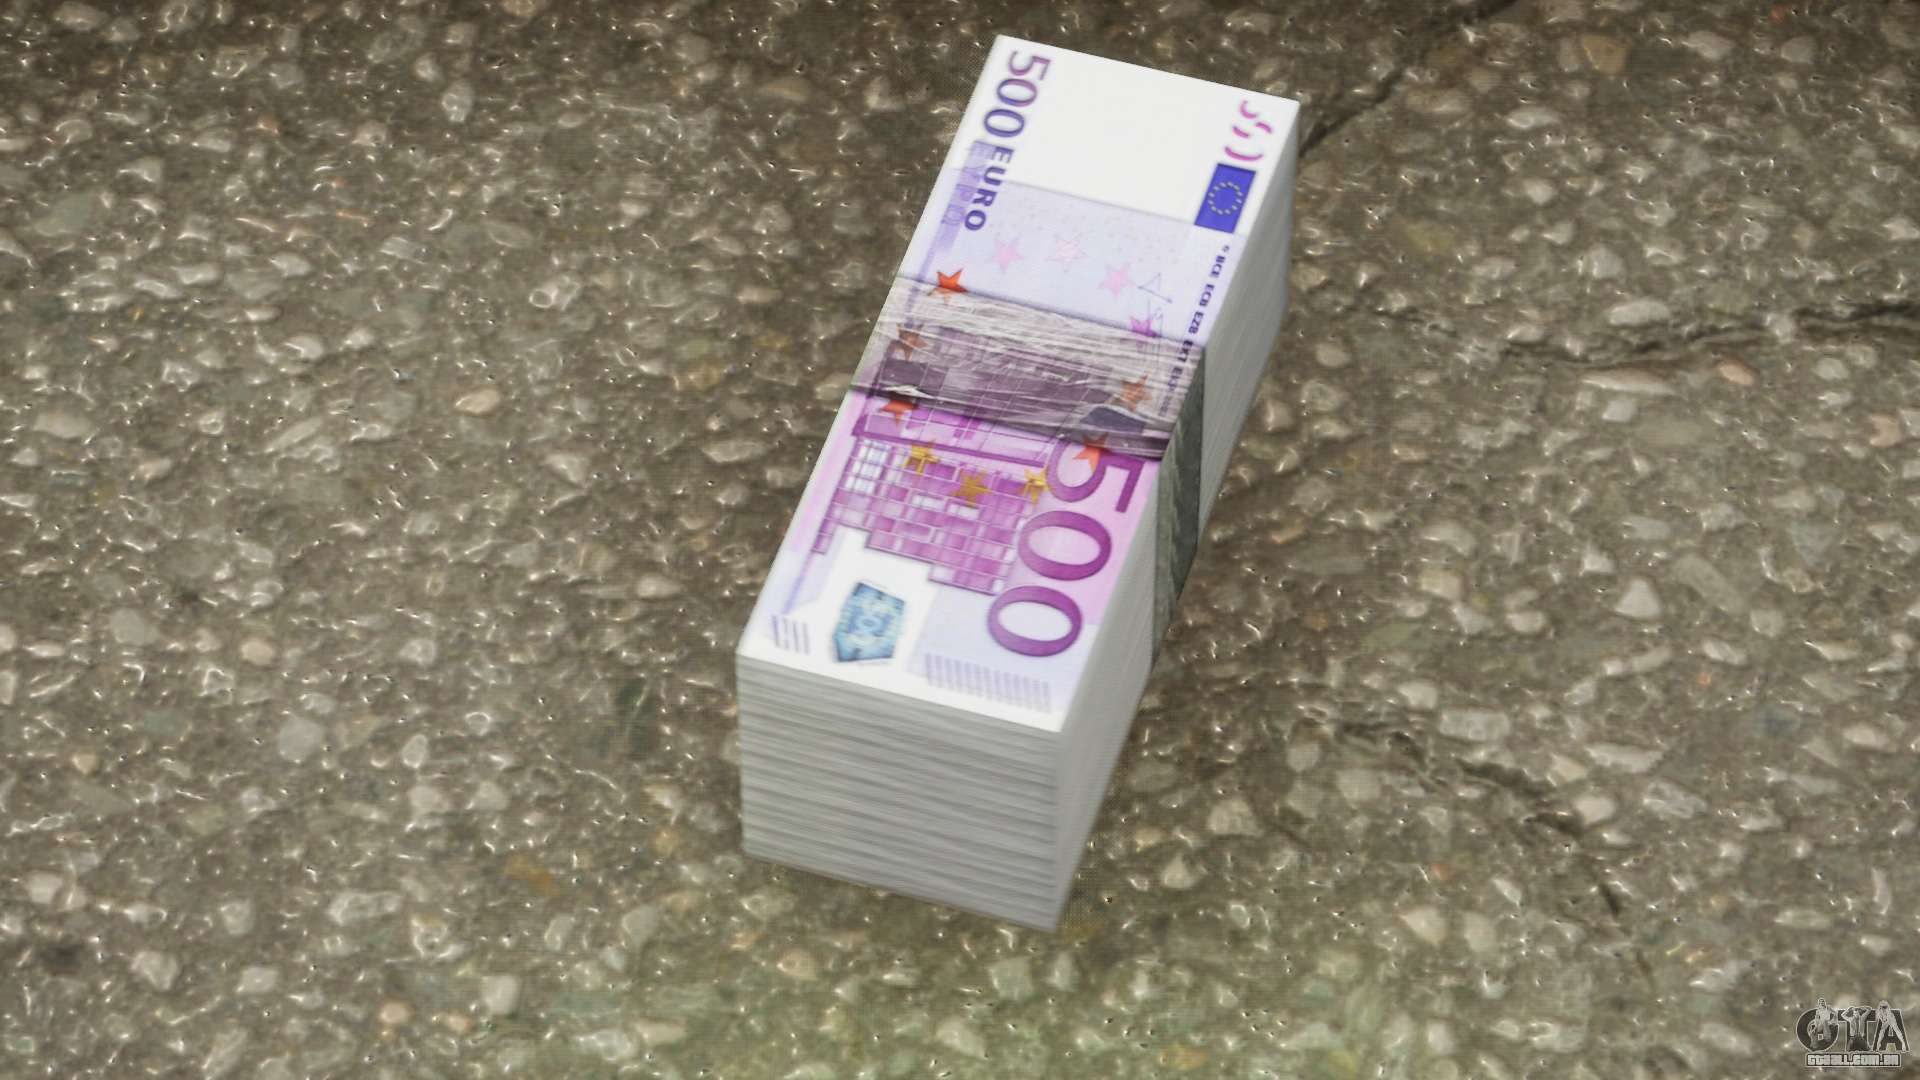 Se puede ingresar 500 euros en un cajero